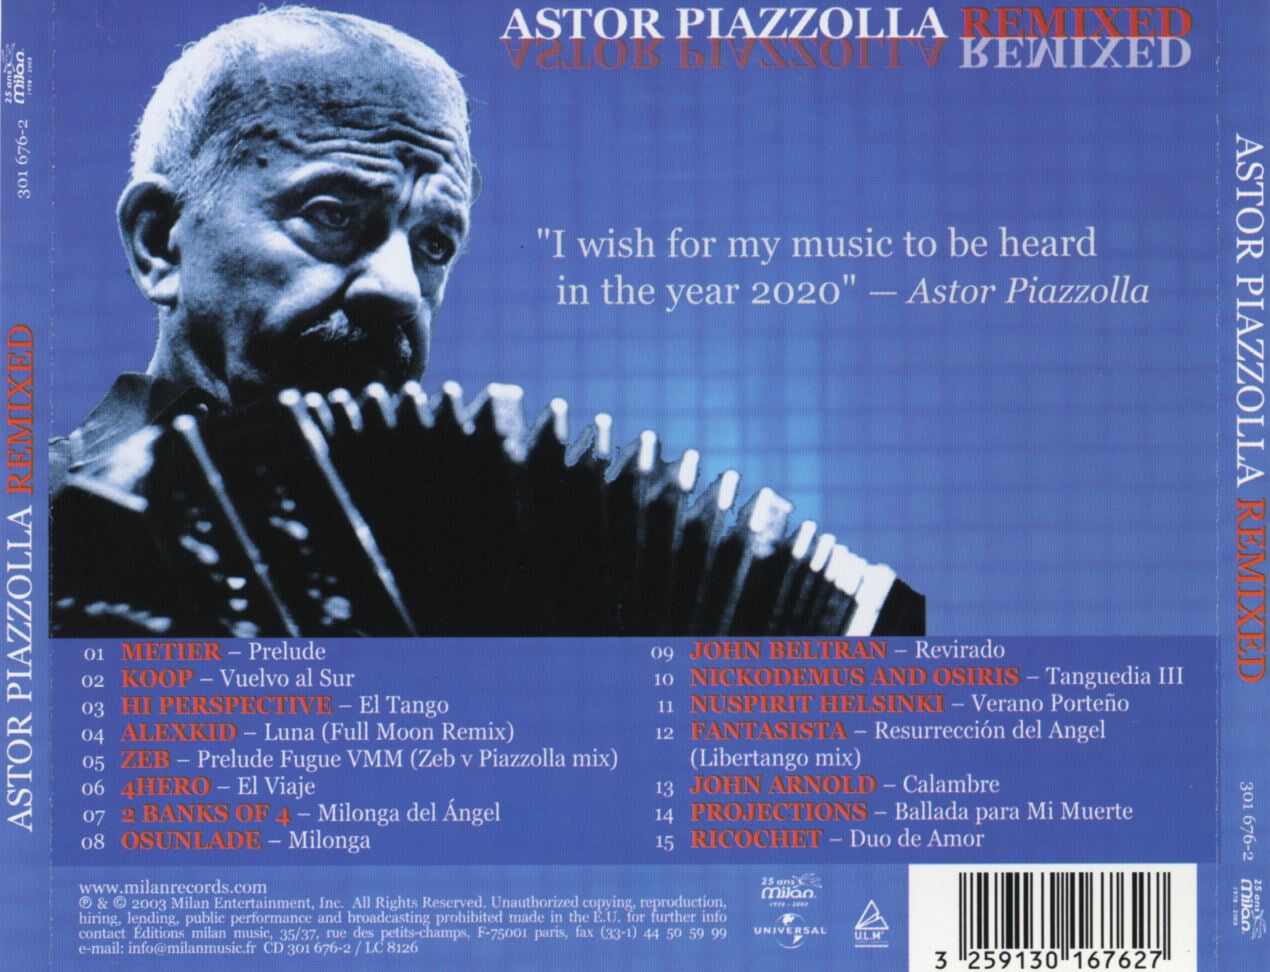 아스토르 피아졸라 리믹스 - Astor Piazzolla Remixed [E.U발매]